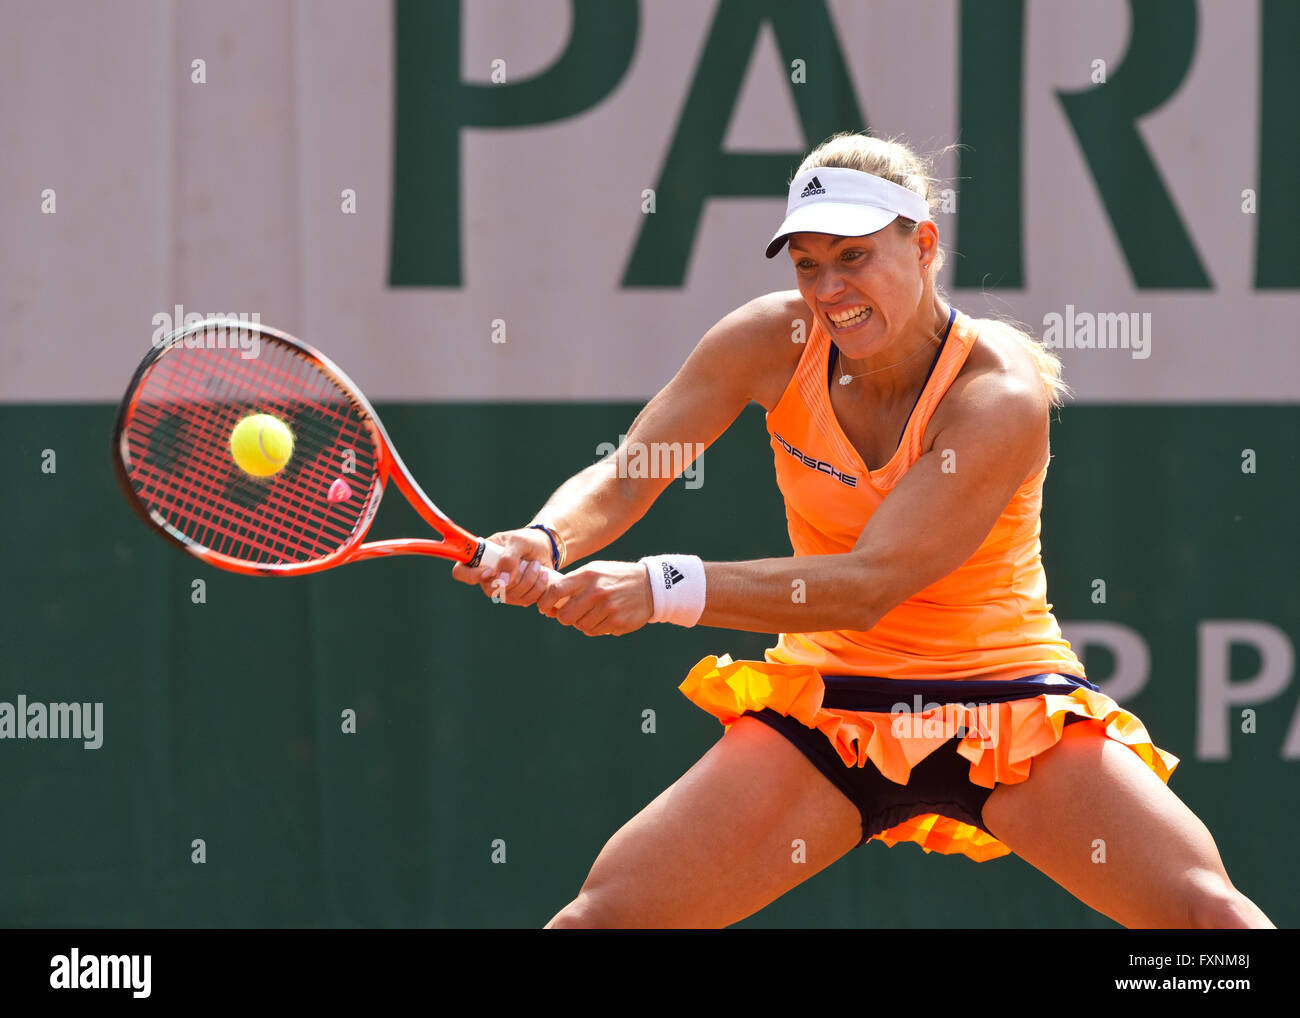 Angelique Kerber (GER), Open de France 2015 Grand Slam Tennis Turnier, Paris, France Banque D'Images